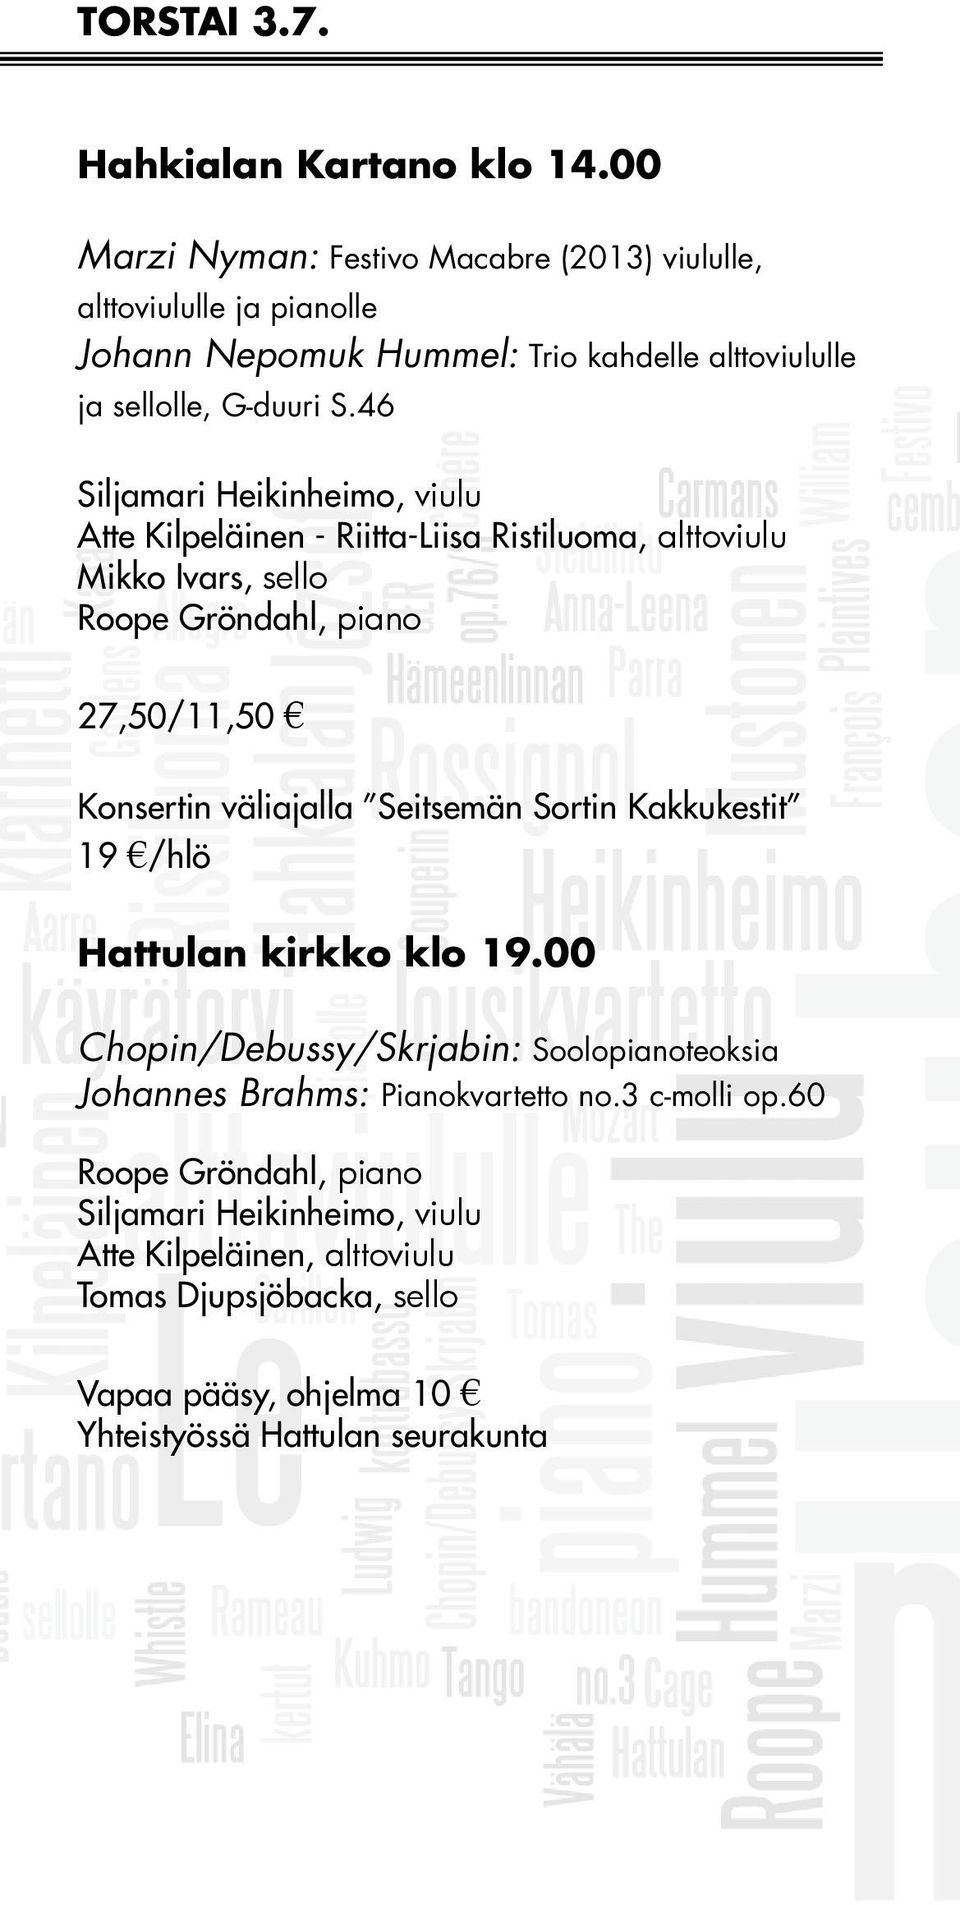 46 Siljamari Heikinheimo, viulu Atte Kilpeläinen - Riitta-Liisa Ristiluoma, alttoviulu Mikko Ivars, sello Roope Gröndahl, piano 27,50/11,50 Konsertin väliajalla